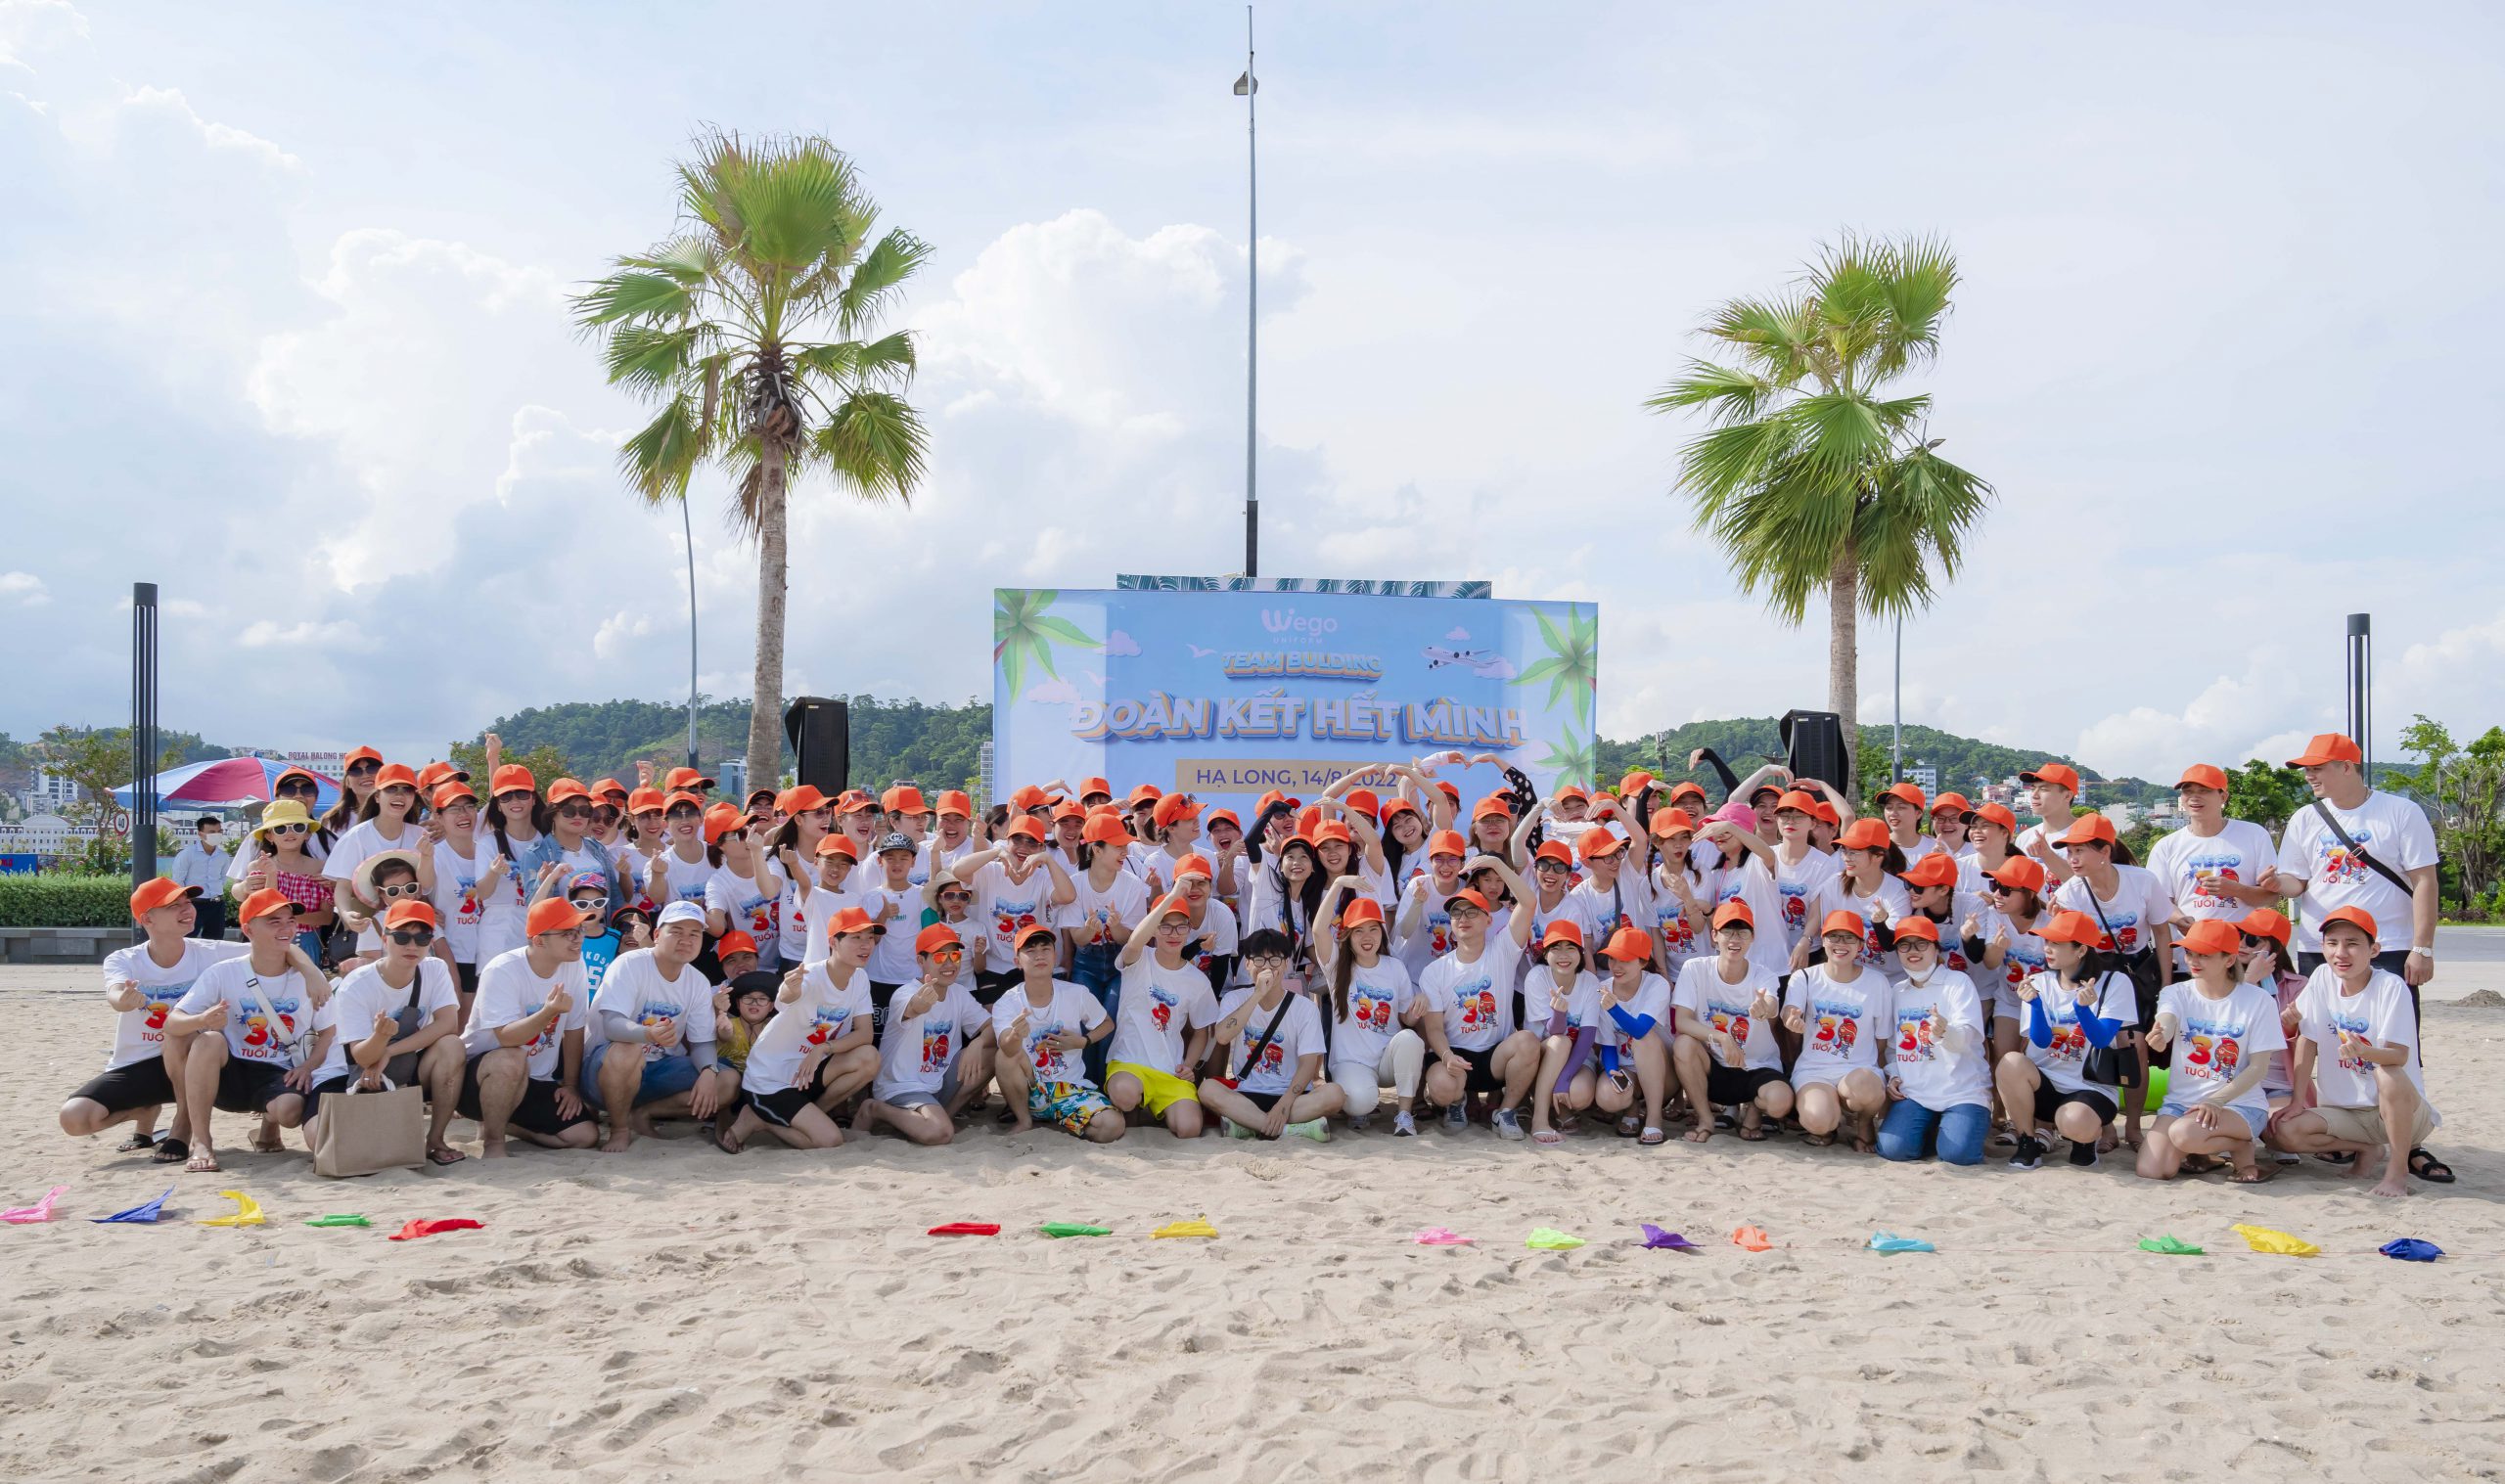 Toàn bộ nhân sự đồng phục Wego trong buổi team building trên bãi biển Hạ Long